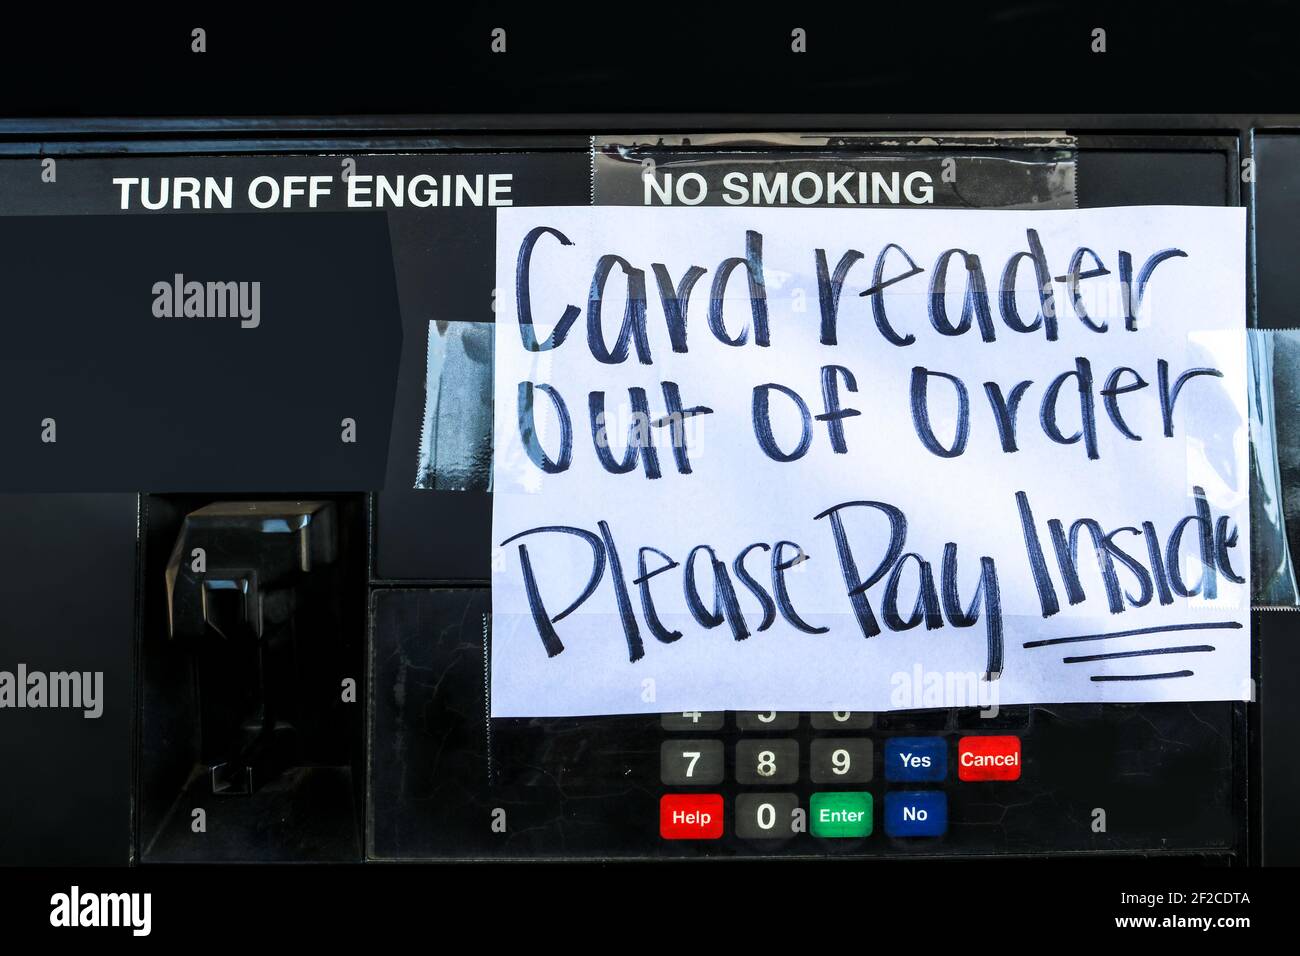 Frustration an der Tankstelle - Handgefertigtes Schild aufgeklebt Benzinpumpe - Kartenleser außer Betrieb Bitte bezahlen Innen Stockfoto